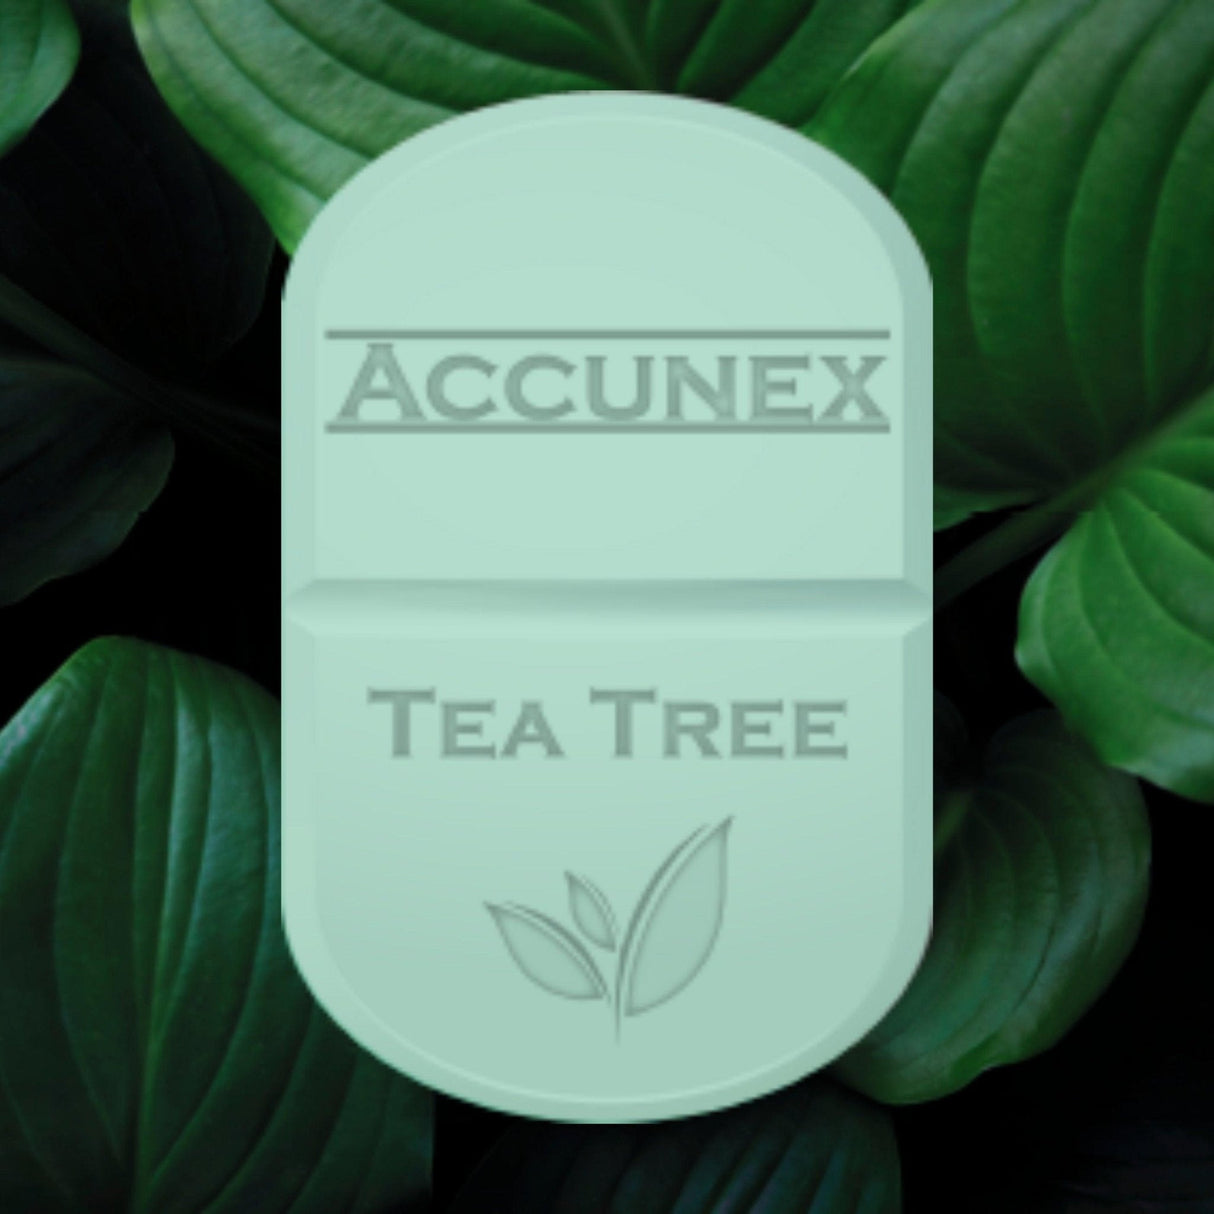 Accunex Soap - Filler Lux™